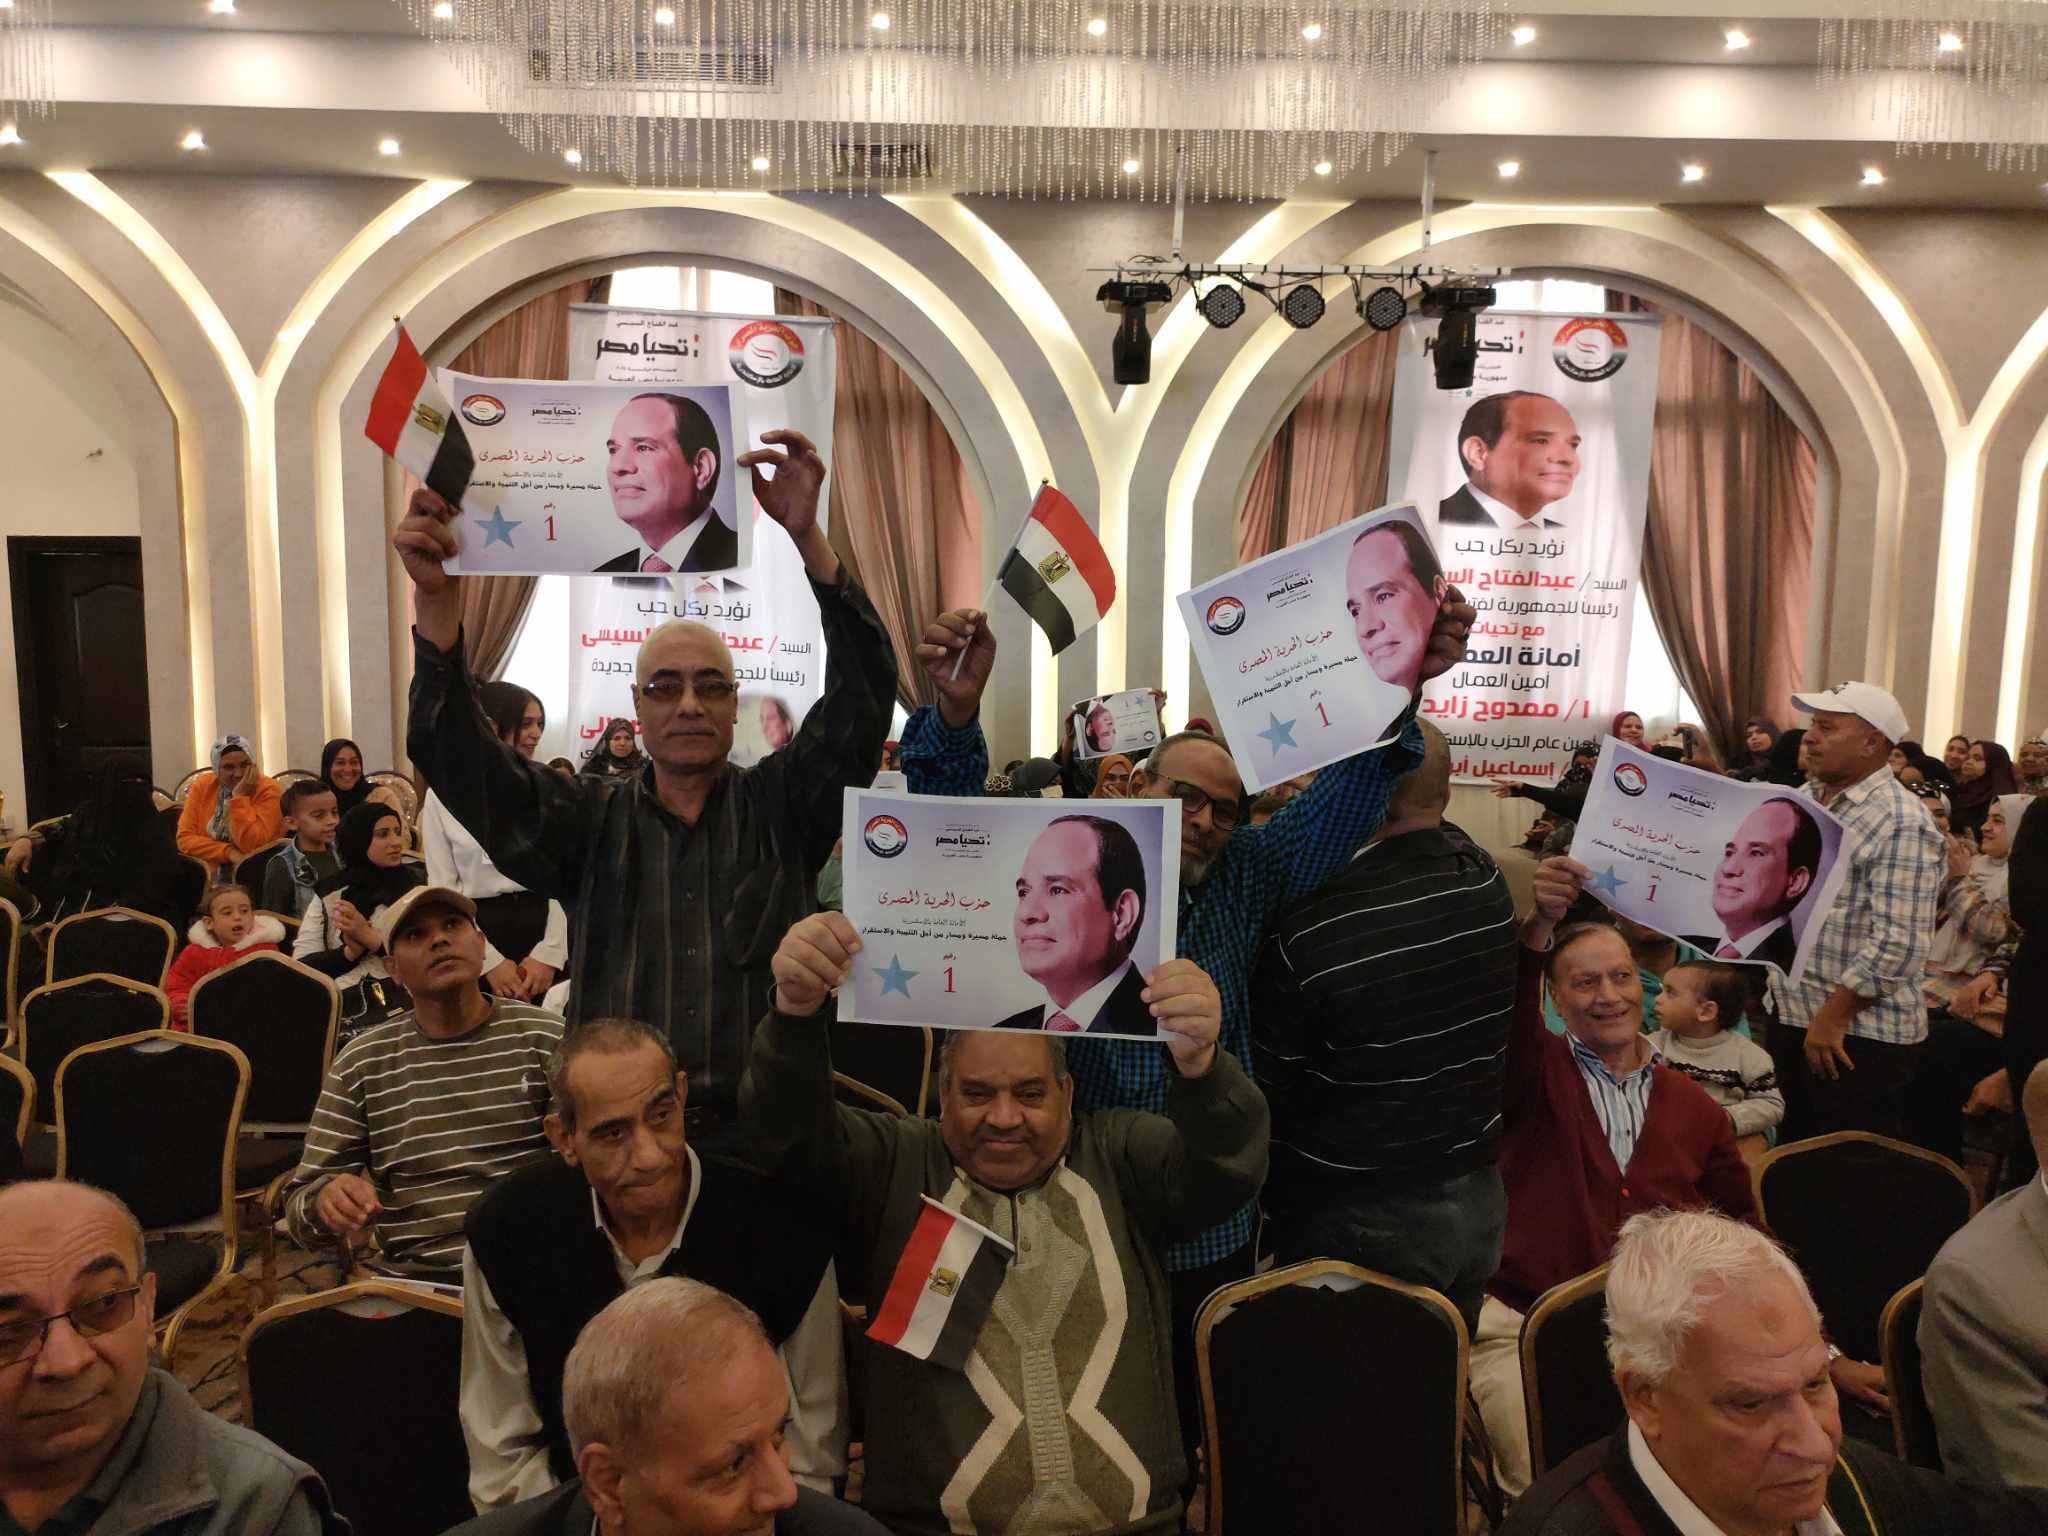 توافد بصور المرشح الرئاسي عبد الفتاح السيسي بحزب الحرية بالإسكندرية